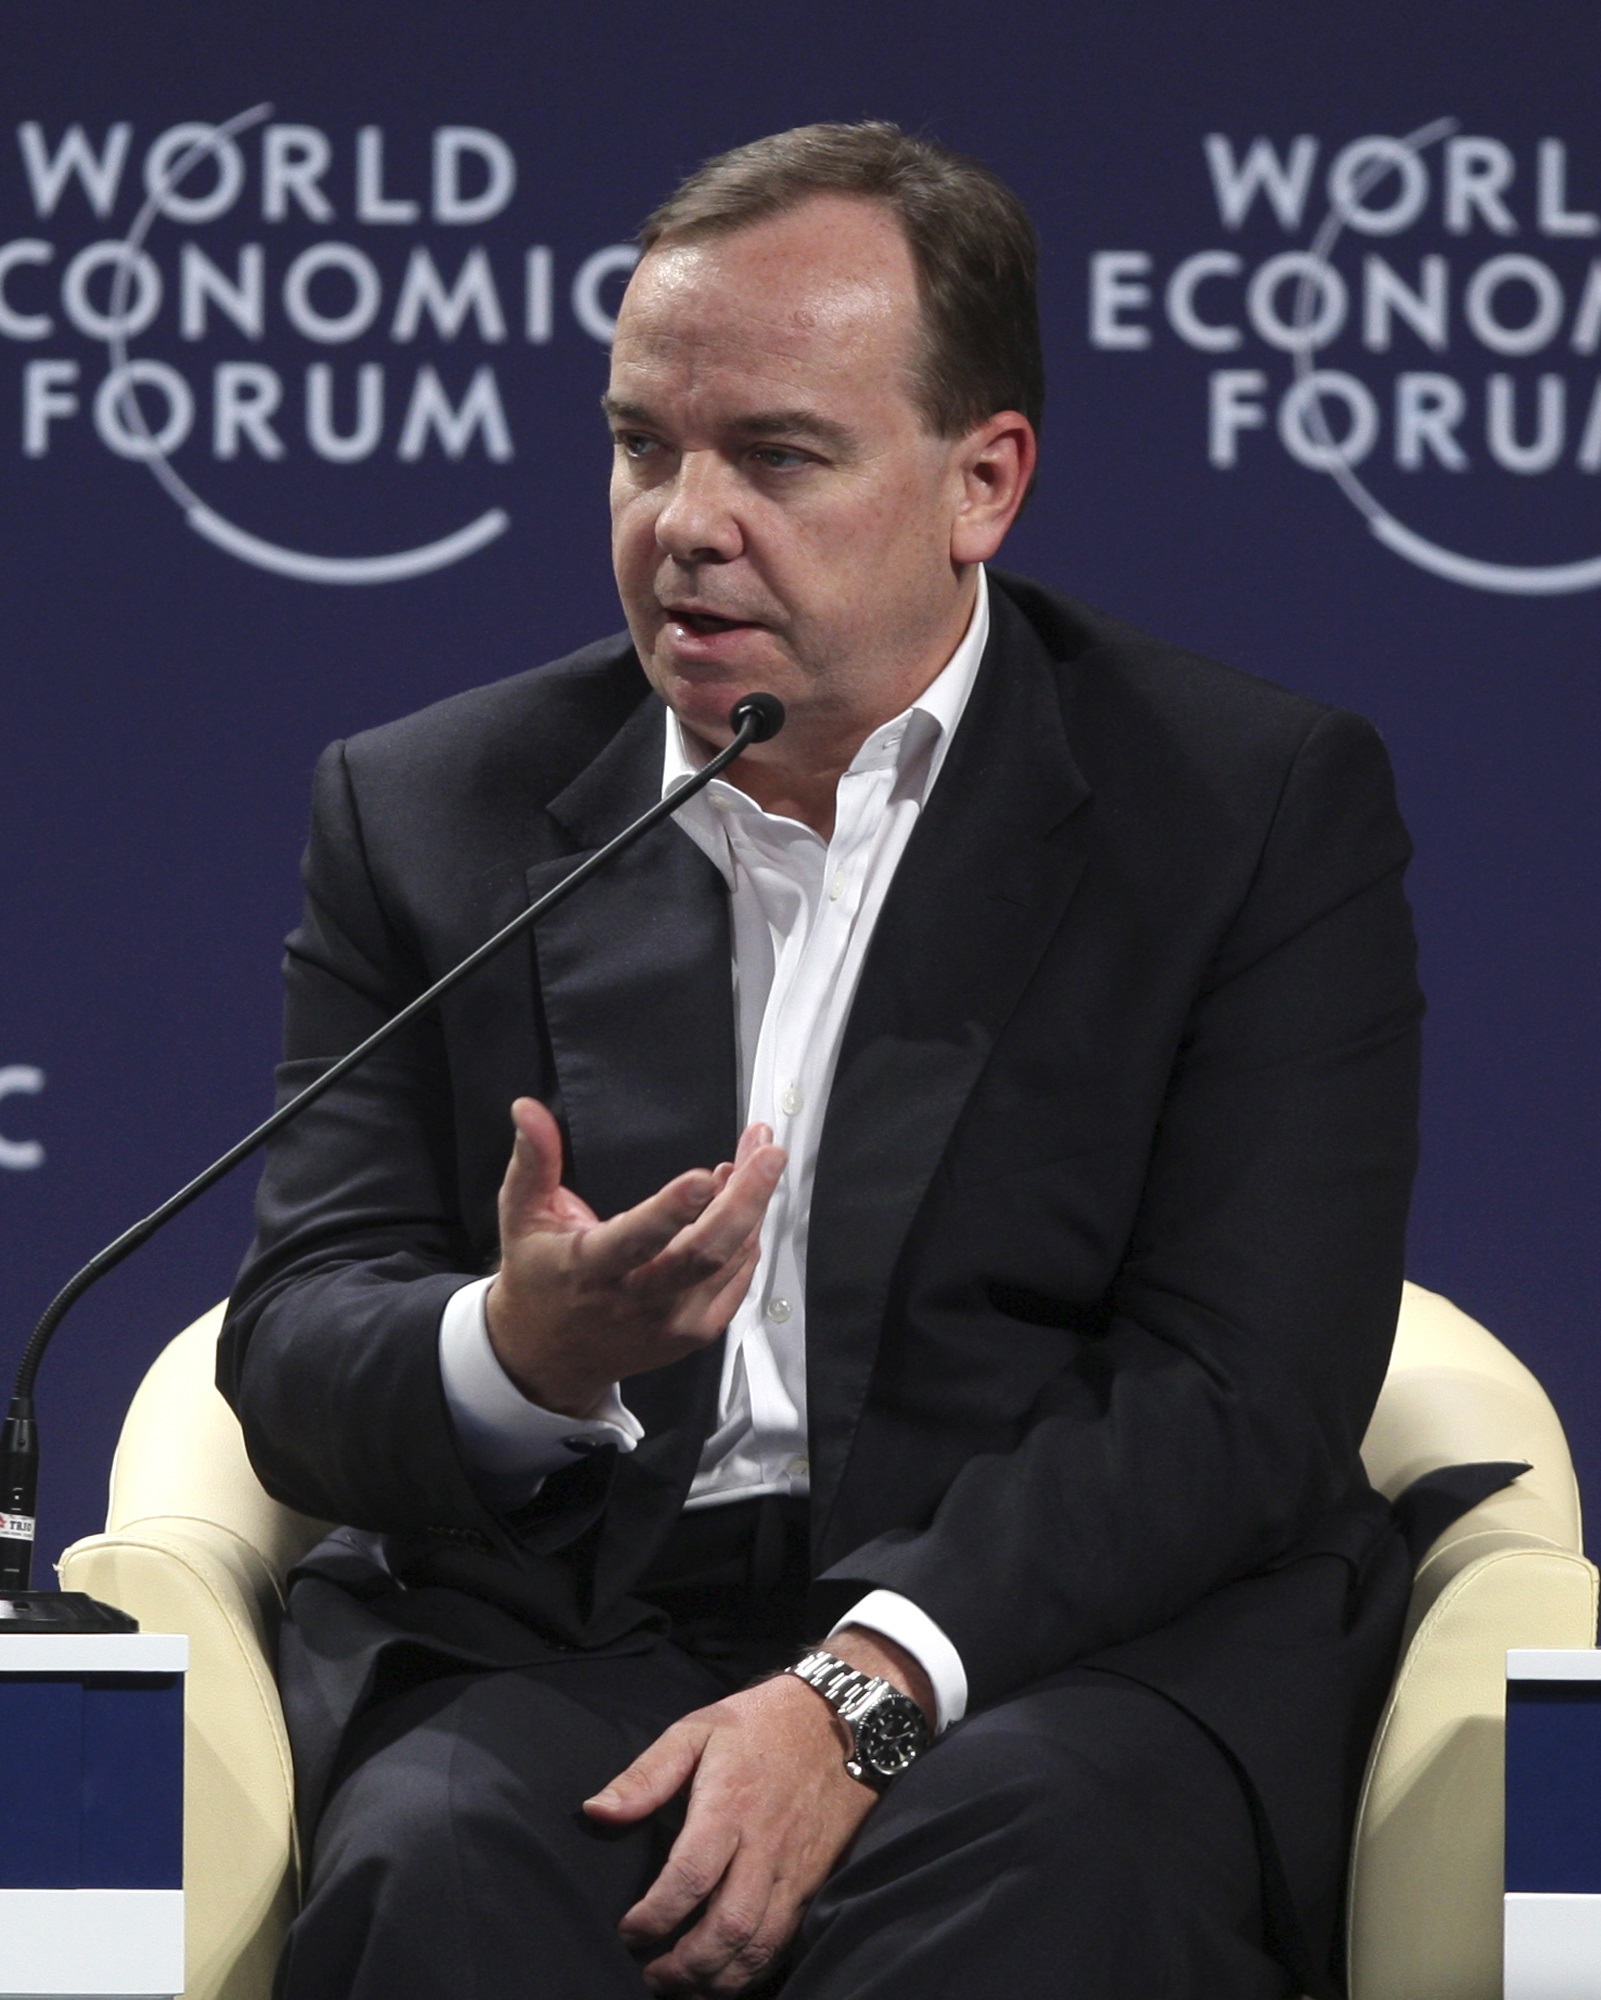 El presidente ejecutivo del Grupo HSBC, Stuart Gulliver, habla durante una sesión en el Foro Económico Mundial en 2011 (AP)